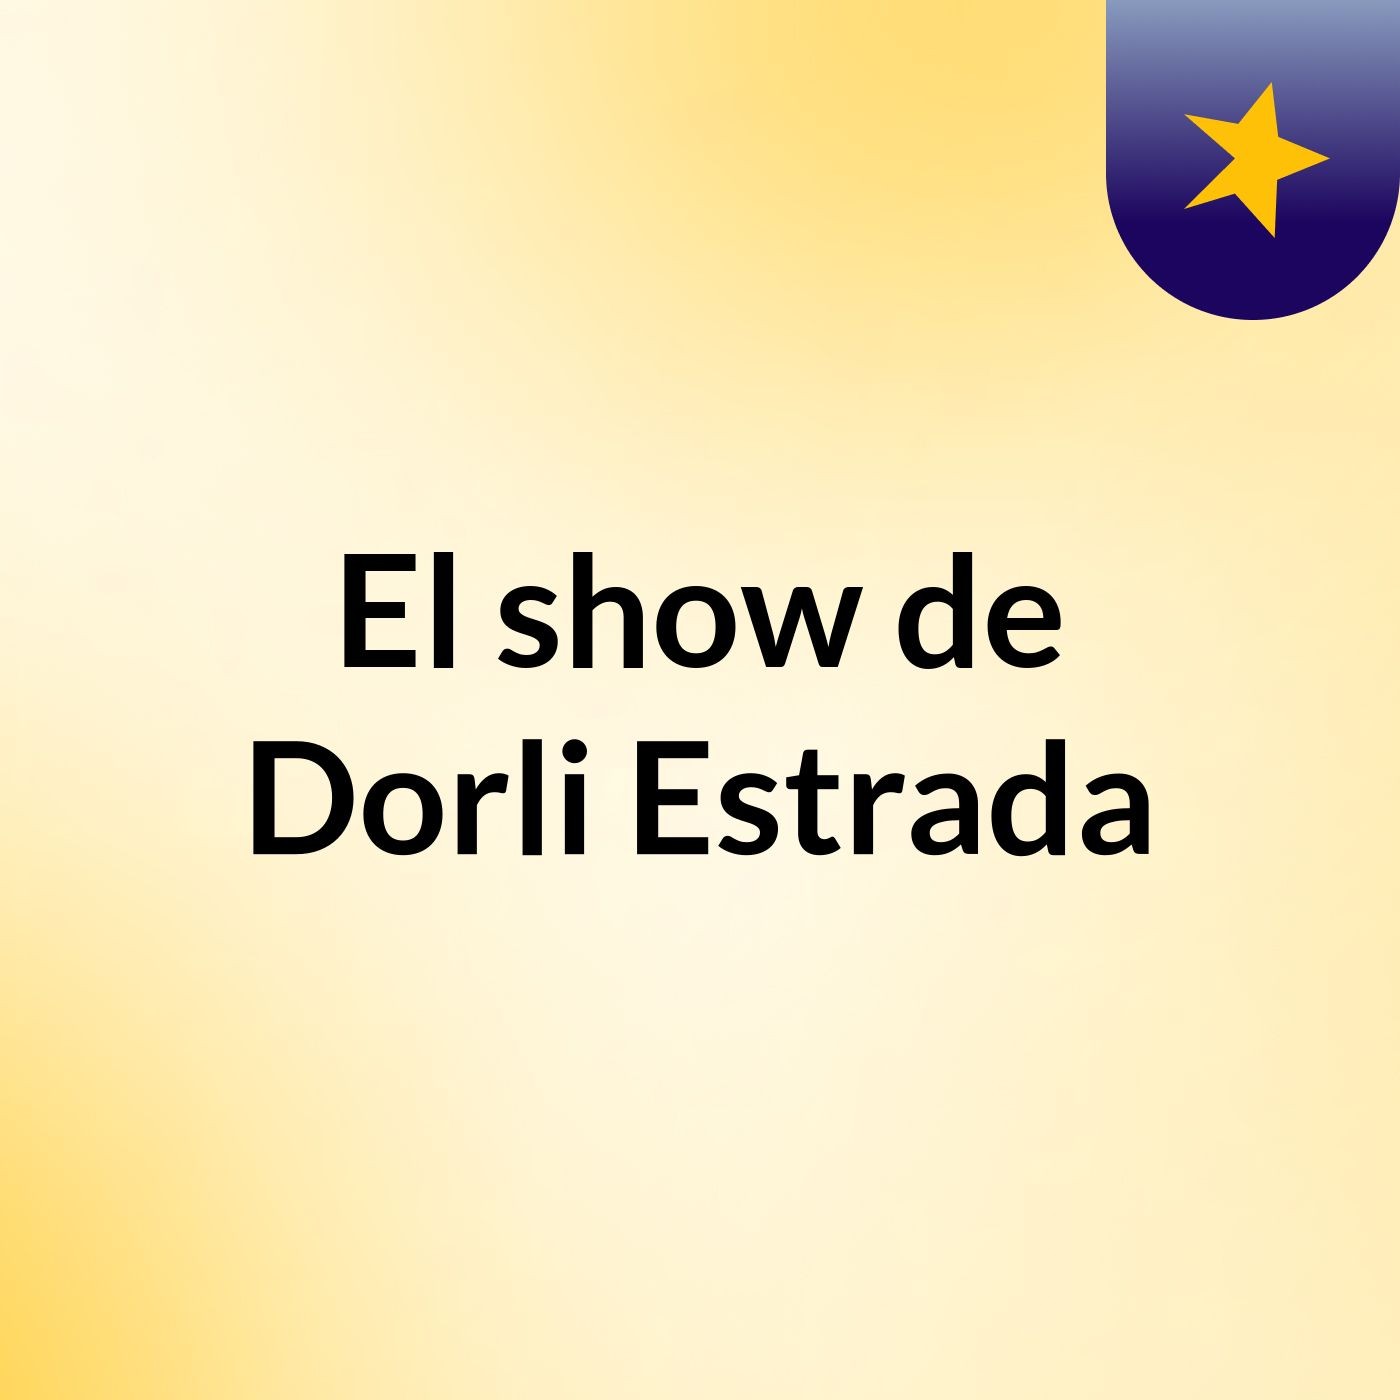 Episodio 4 - El show de Dorli Estrada